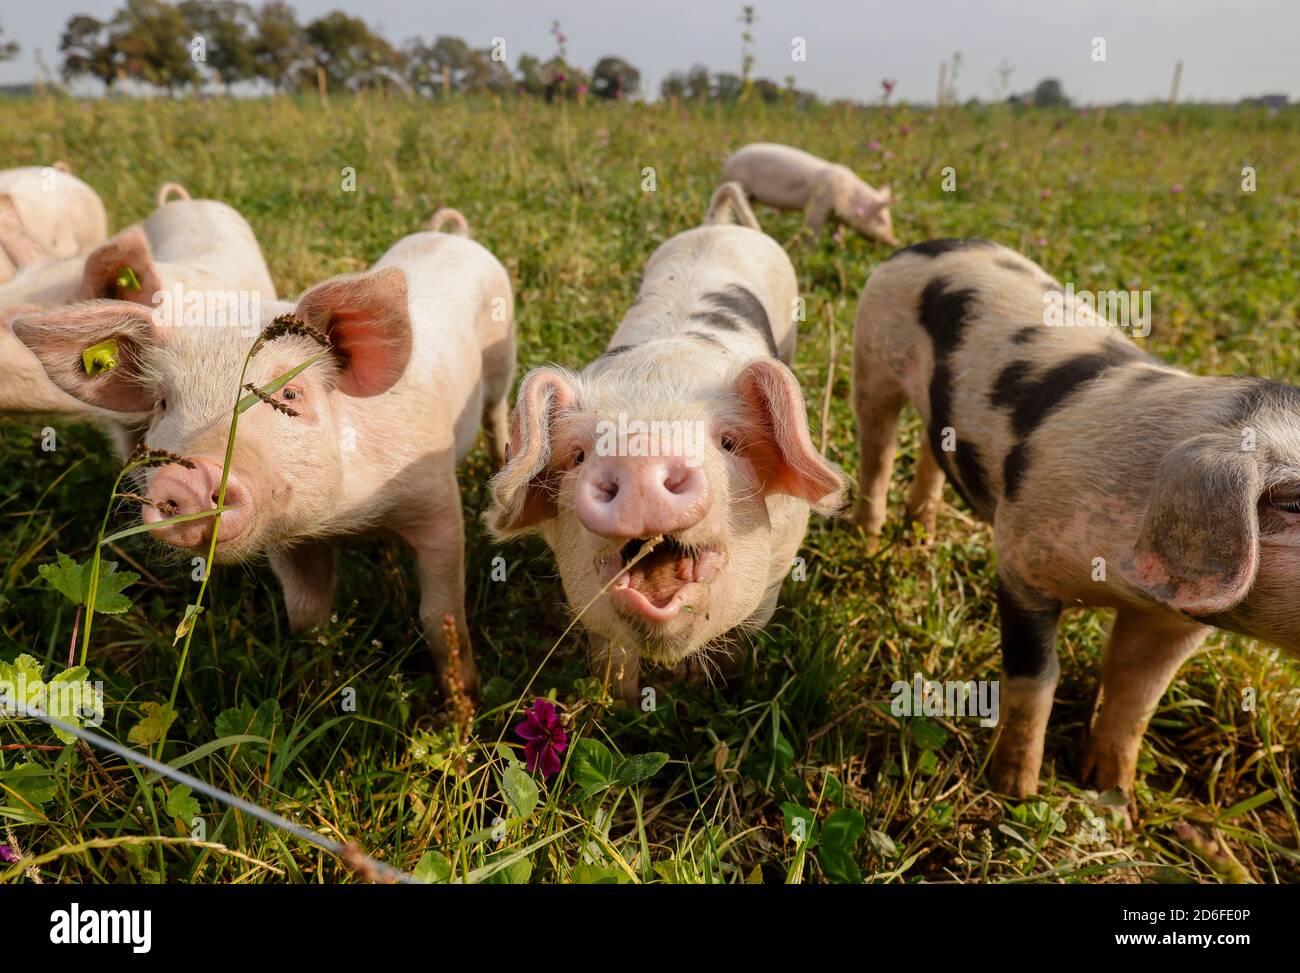 Kamp-Lintfort, Nordrhein-Westfalen, Deutschland - Bio-Landwirtschaft NRW, Bio-Schweine, Weideschweine, Freilandschweine leben auf dem Bioland-Bauernhof Frohnenbruch das ganze Jahr über an der frischen Luft, als Wetterschutz gibt es nur eine offene Schutzhütte. Stockfoto